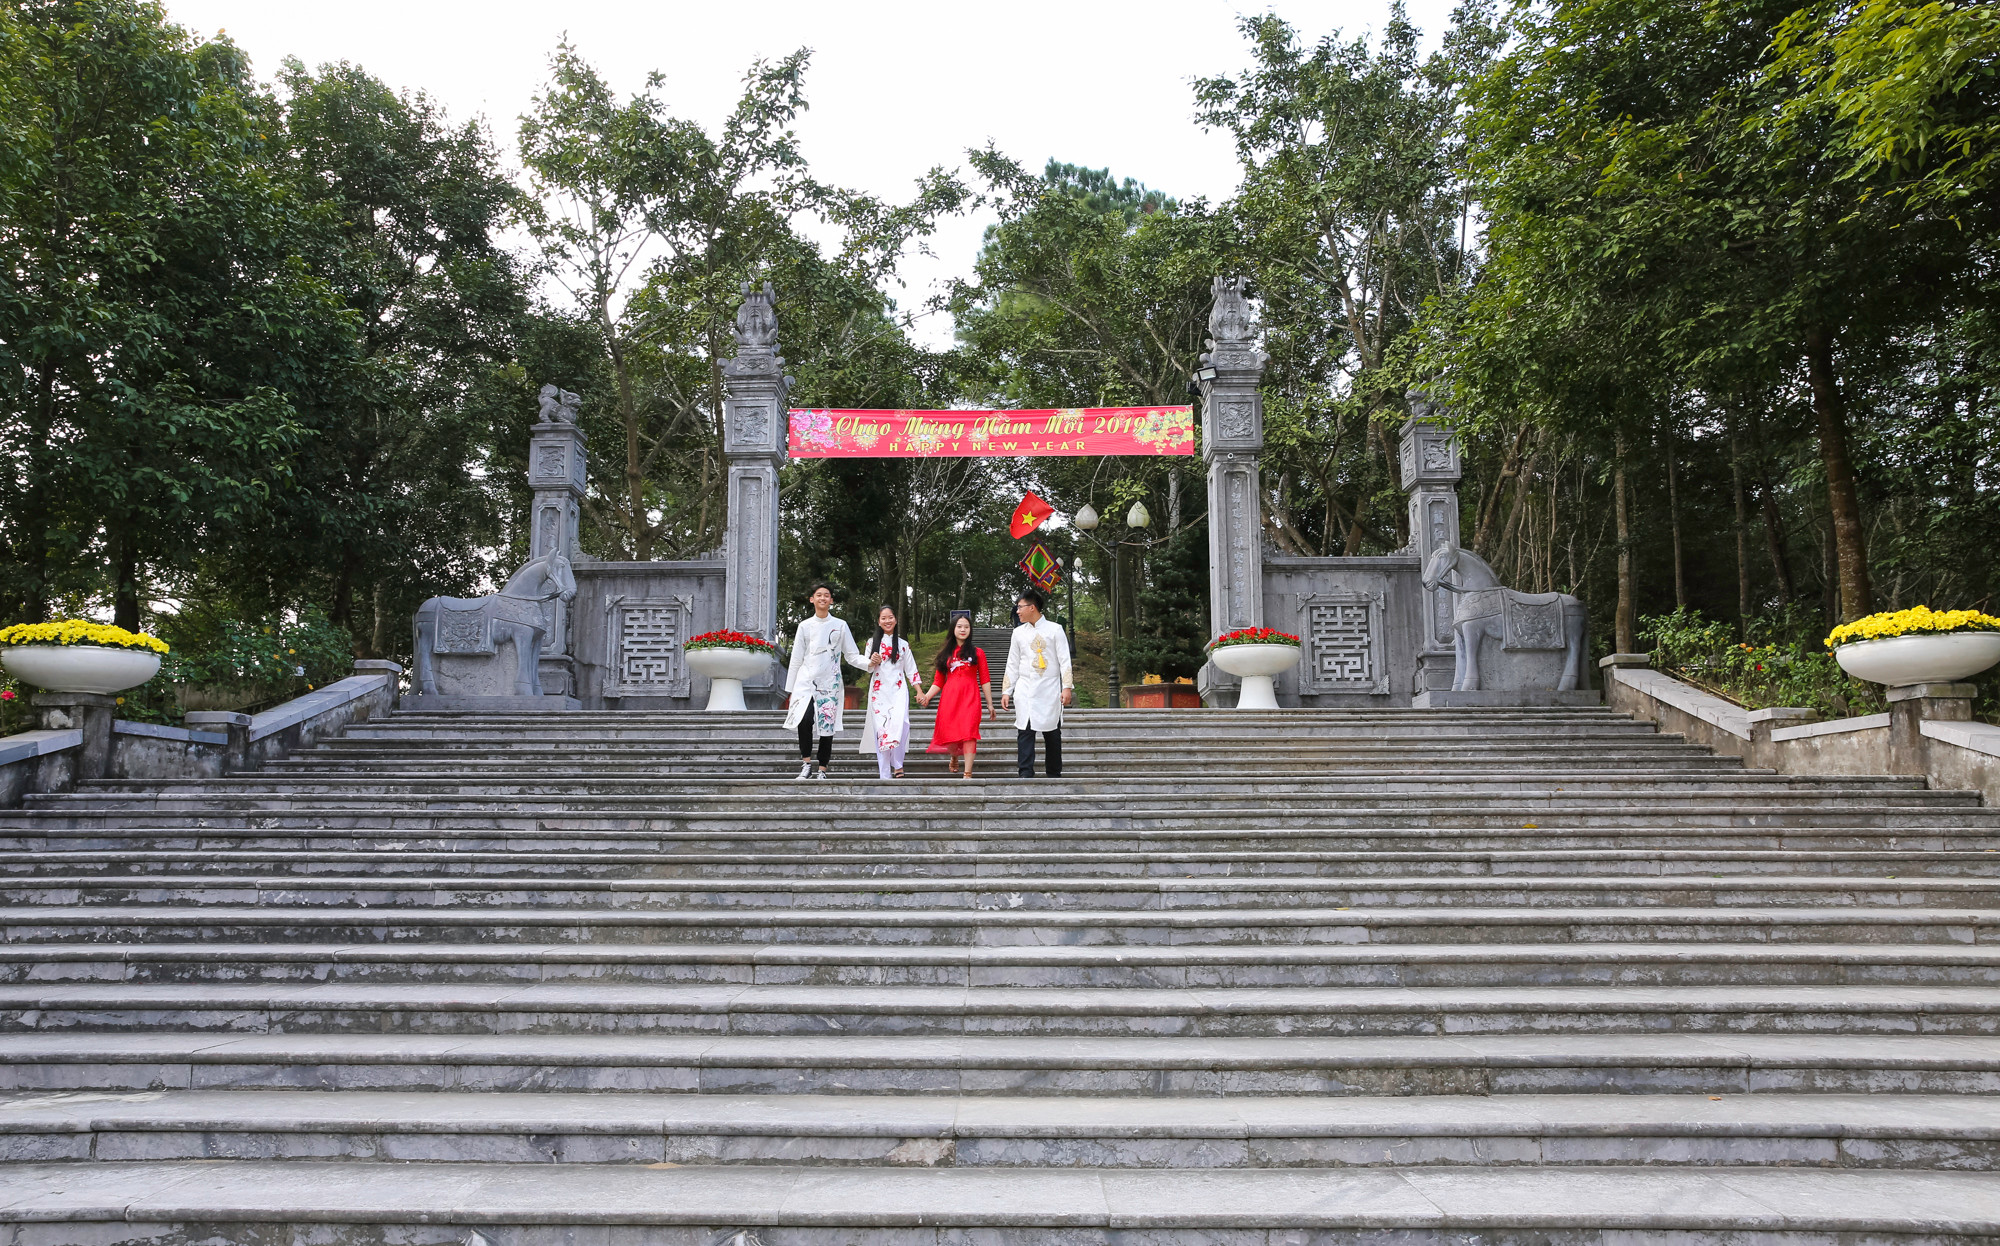 Bước lên theo 81 bậc tam cấp, kiến trúc ngôi đền hiện ra uy nghi bề thế, và cổ kính, tiêu biểu cho kiến trúc đền chùa ở Việt Nam. 